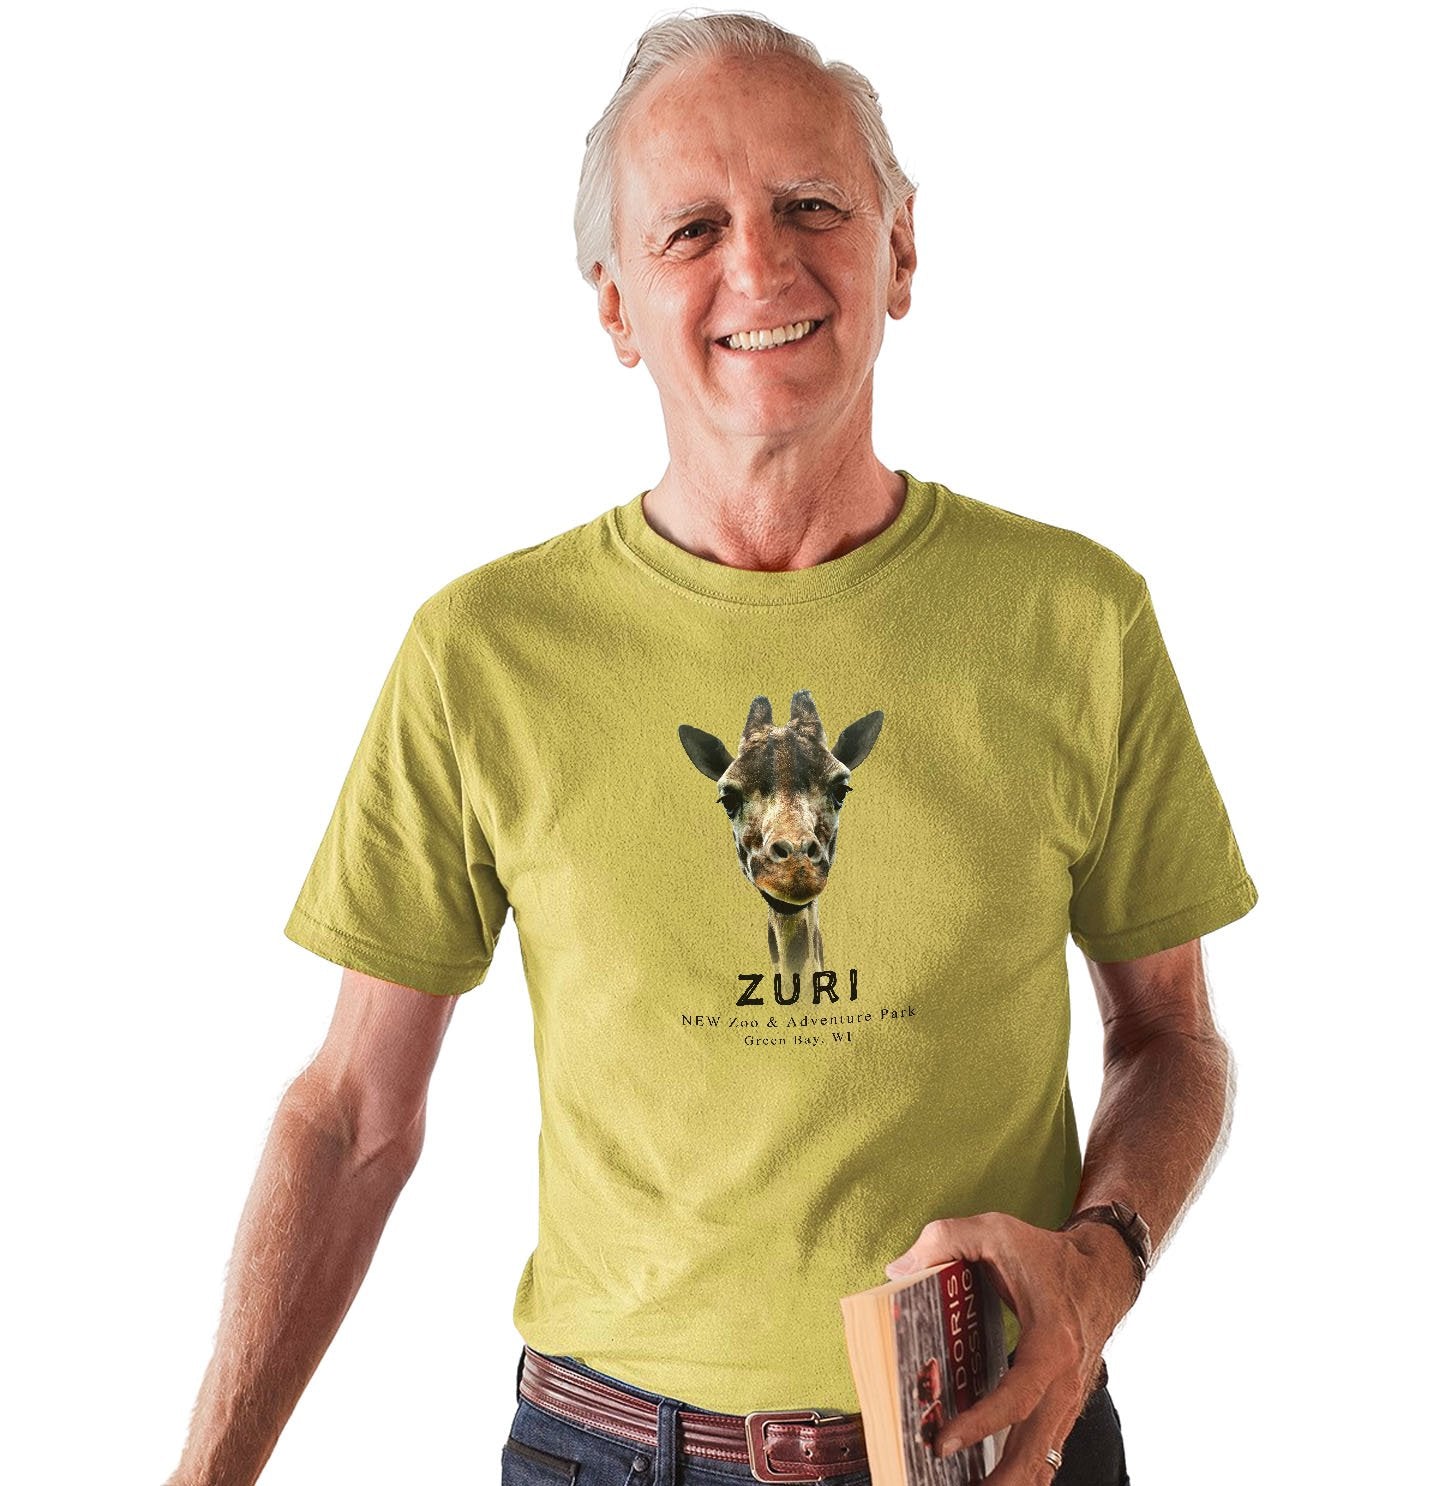 NEW Zoo Zuri The Giraffe - Adult Unisex T-Shirt